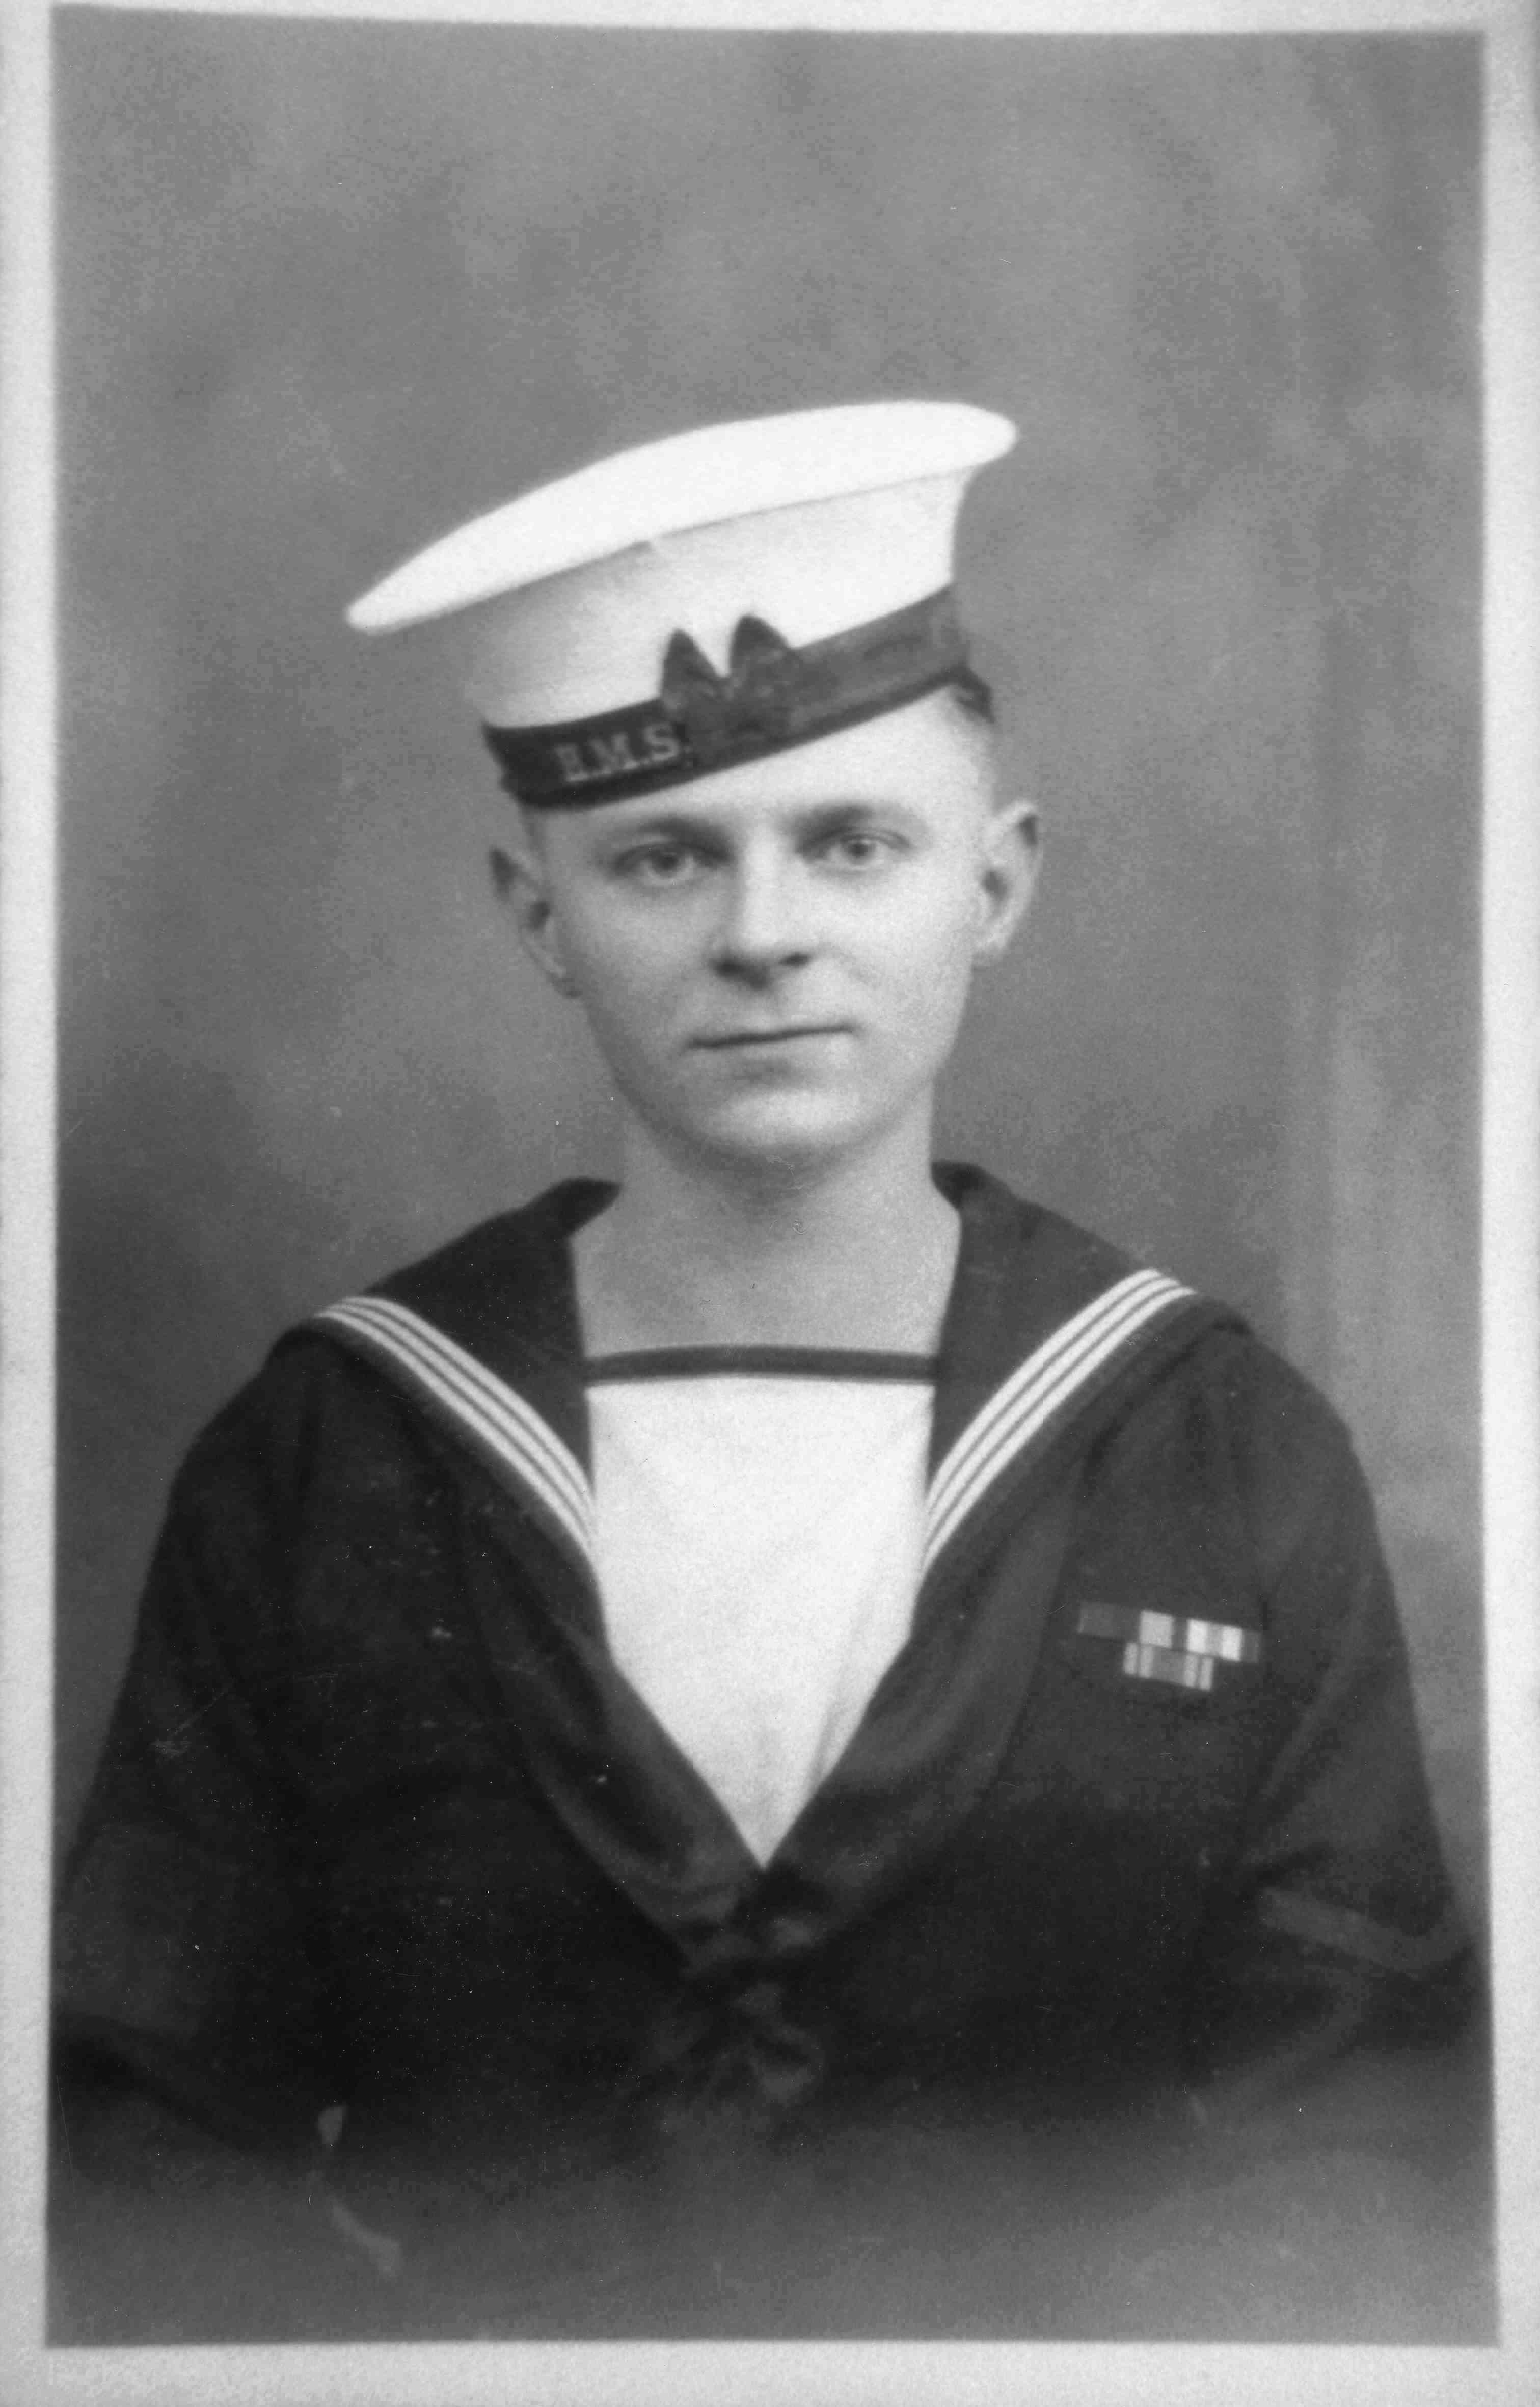 Albert in the Navy